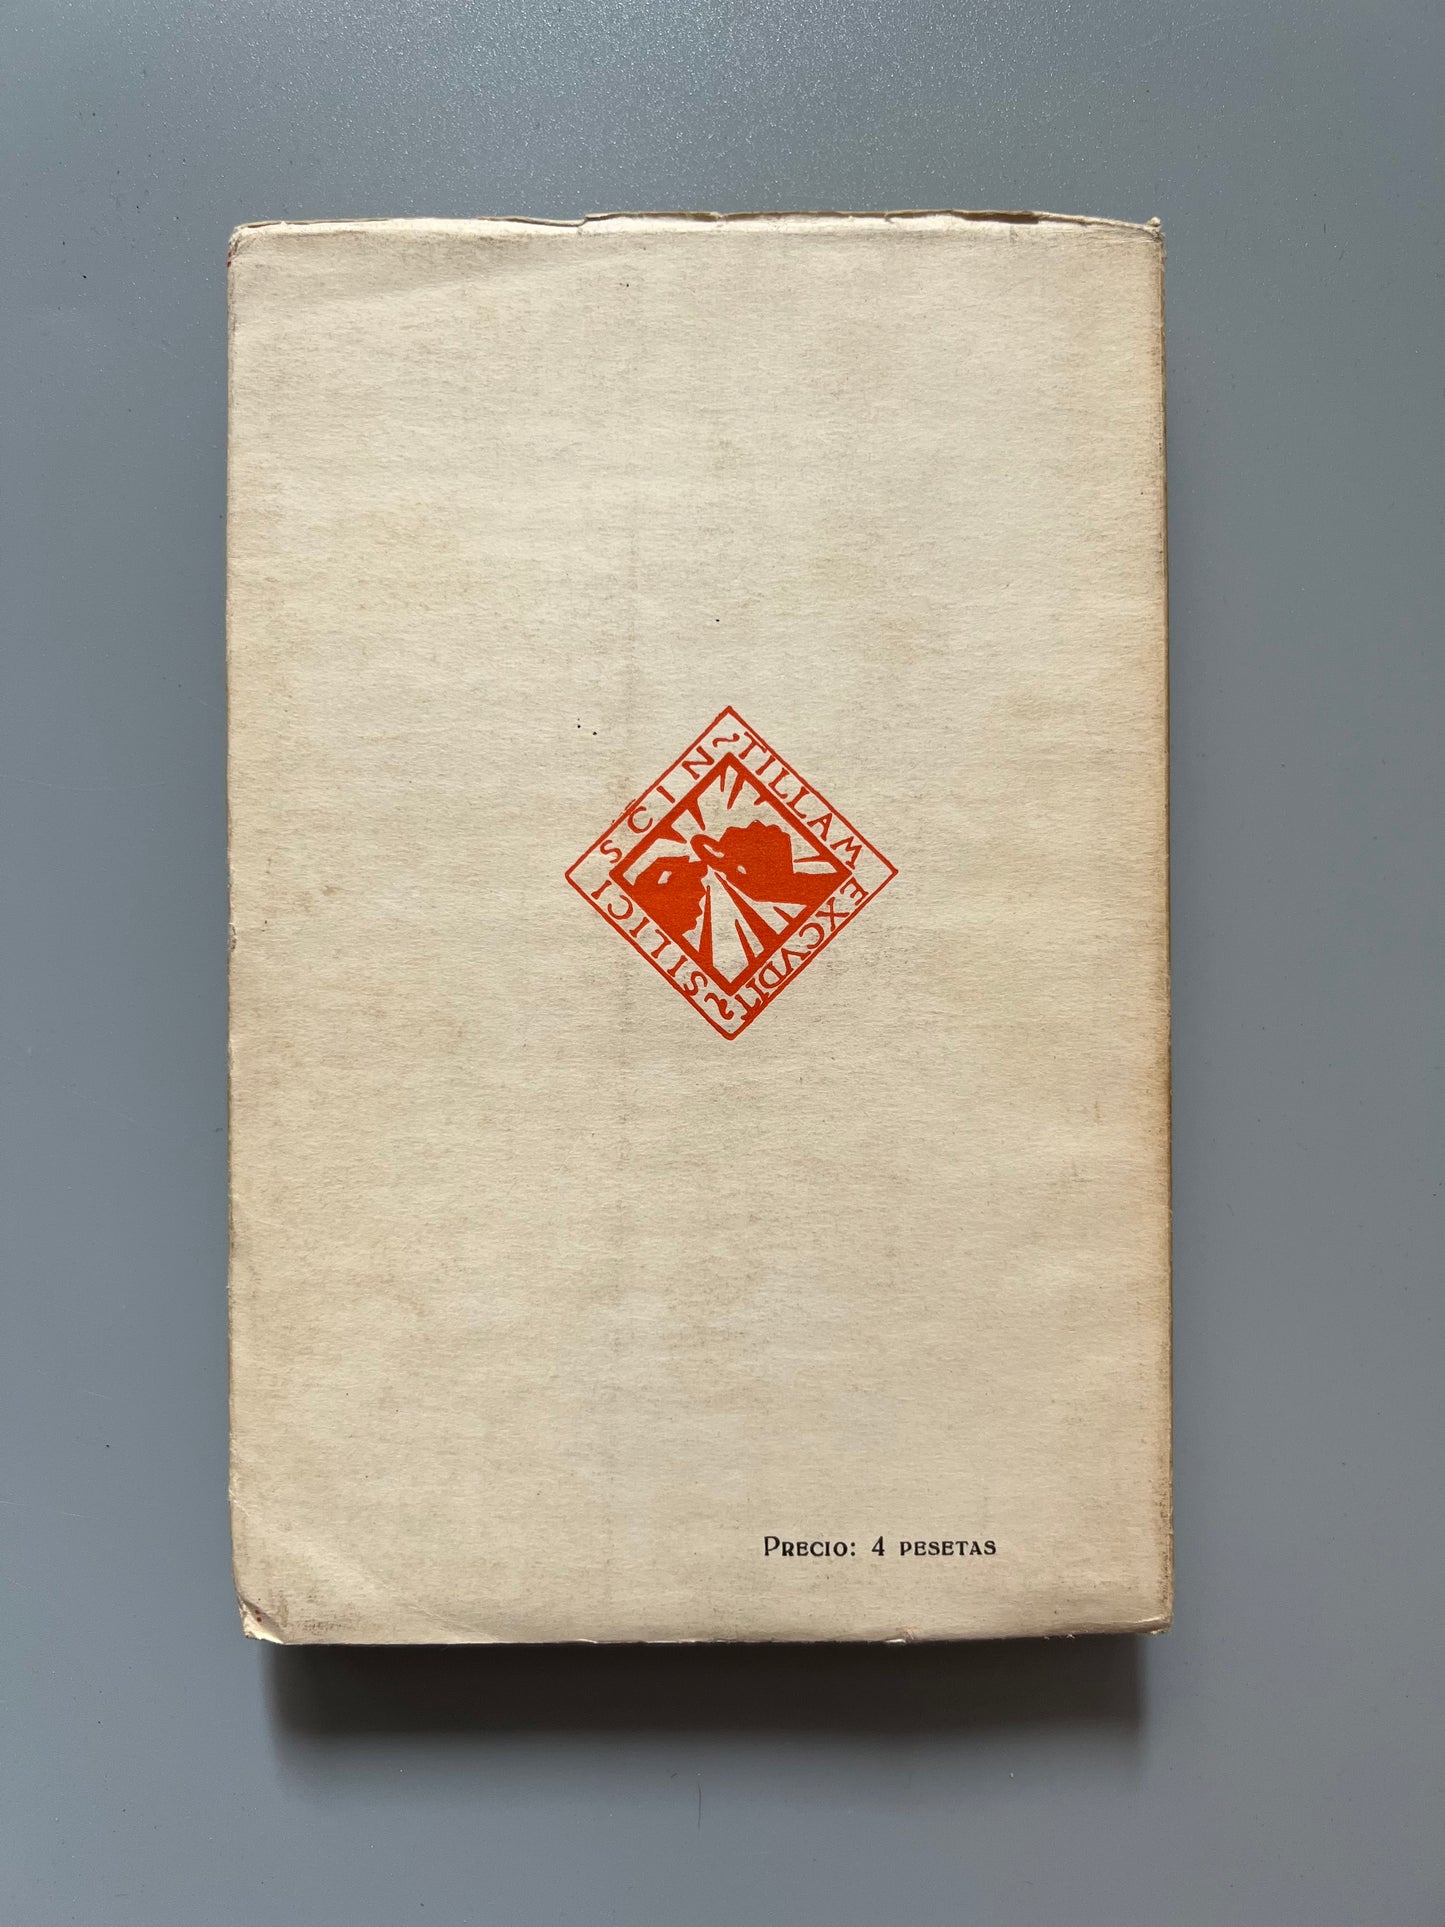 Romancero. Biblioteca Literaria del Estudiante - Madrid, 1936